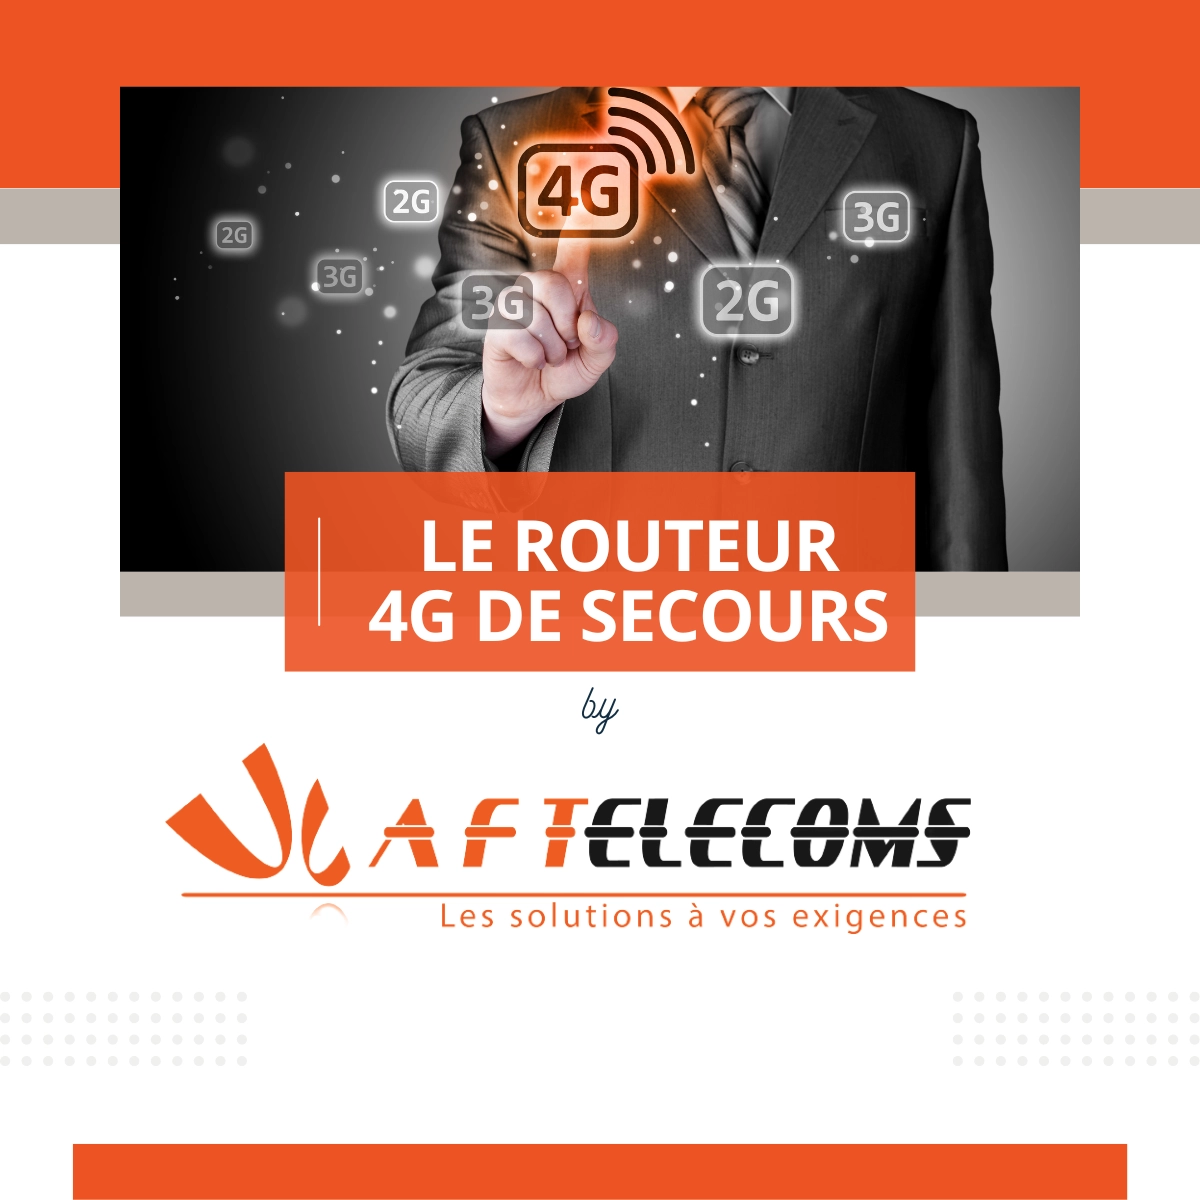 Le routeur 4G de secours by AF TELECOMS